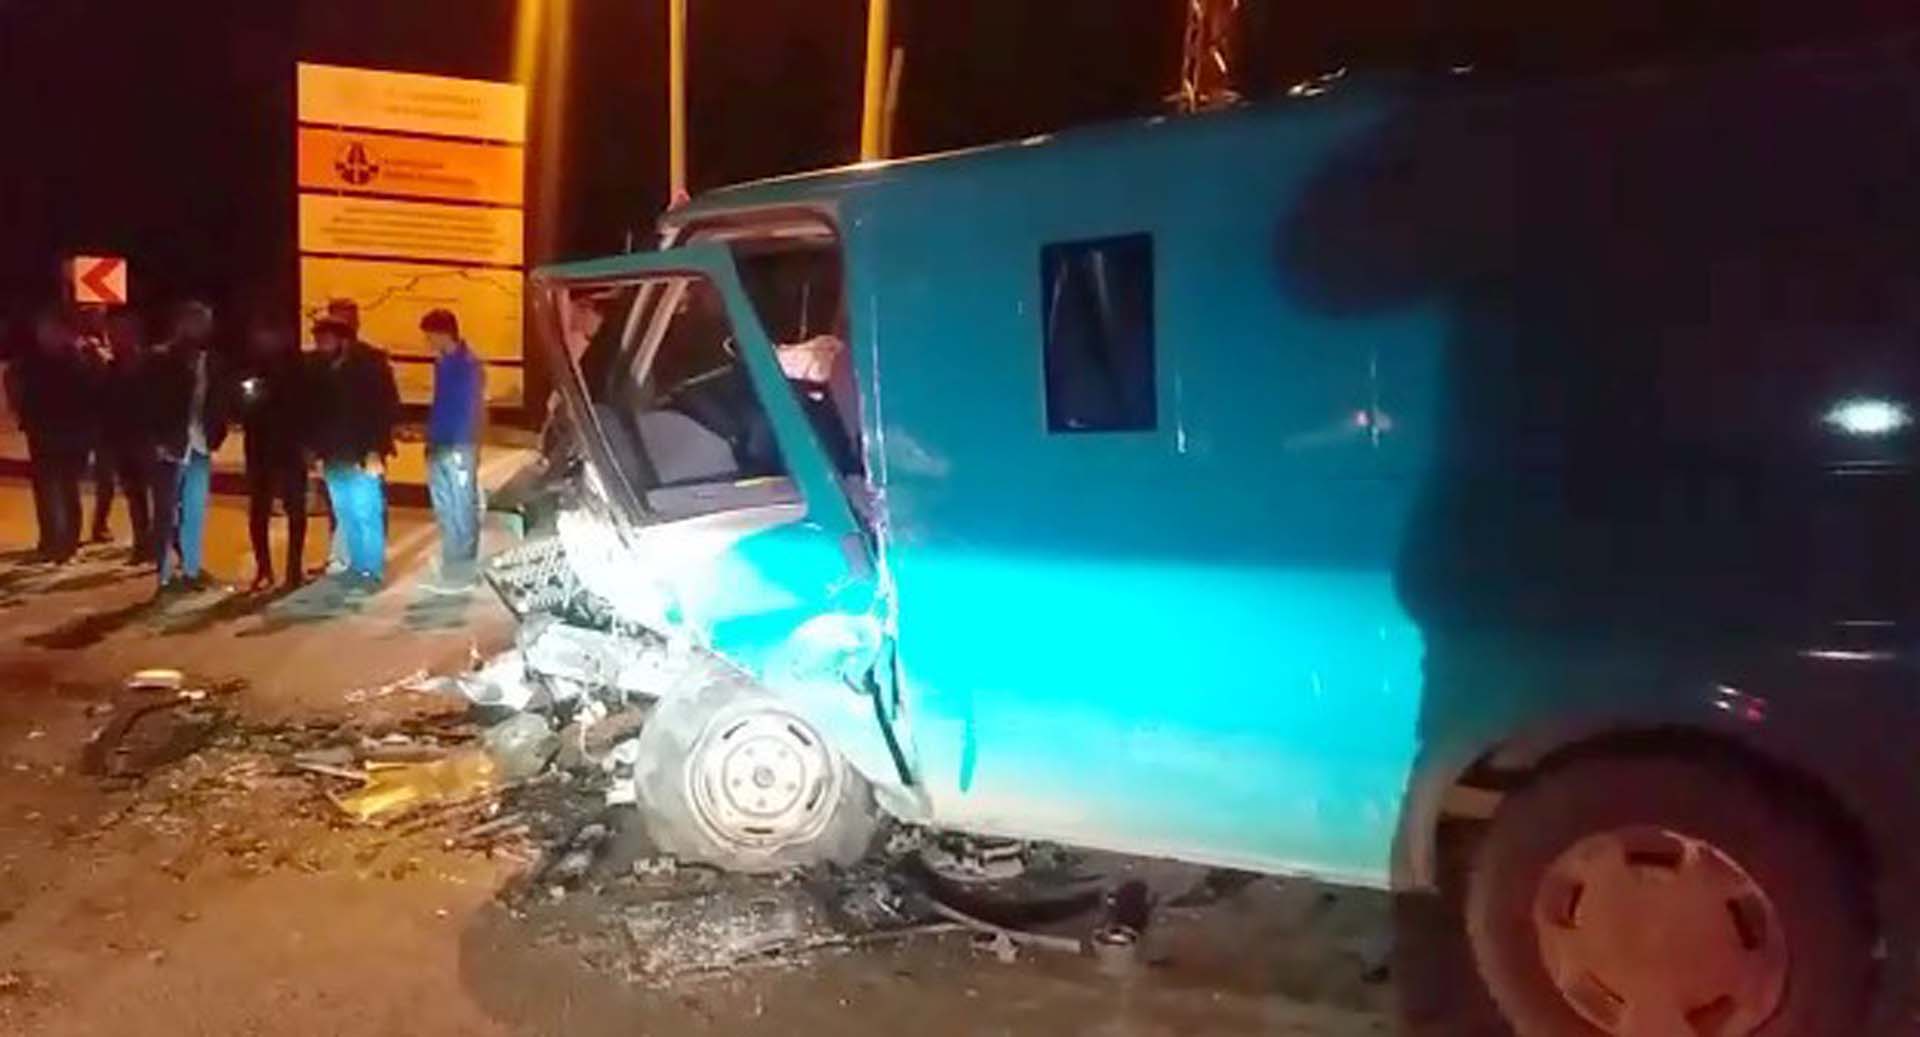 Hakkari'de korkunç kaza! Minibüs ile otomobil çarpıştı: Polis memuru Abdulkadir Kılıç ve Kemal Aslan hayatını kaybetti, 5 yaralı 